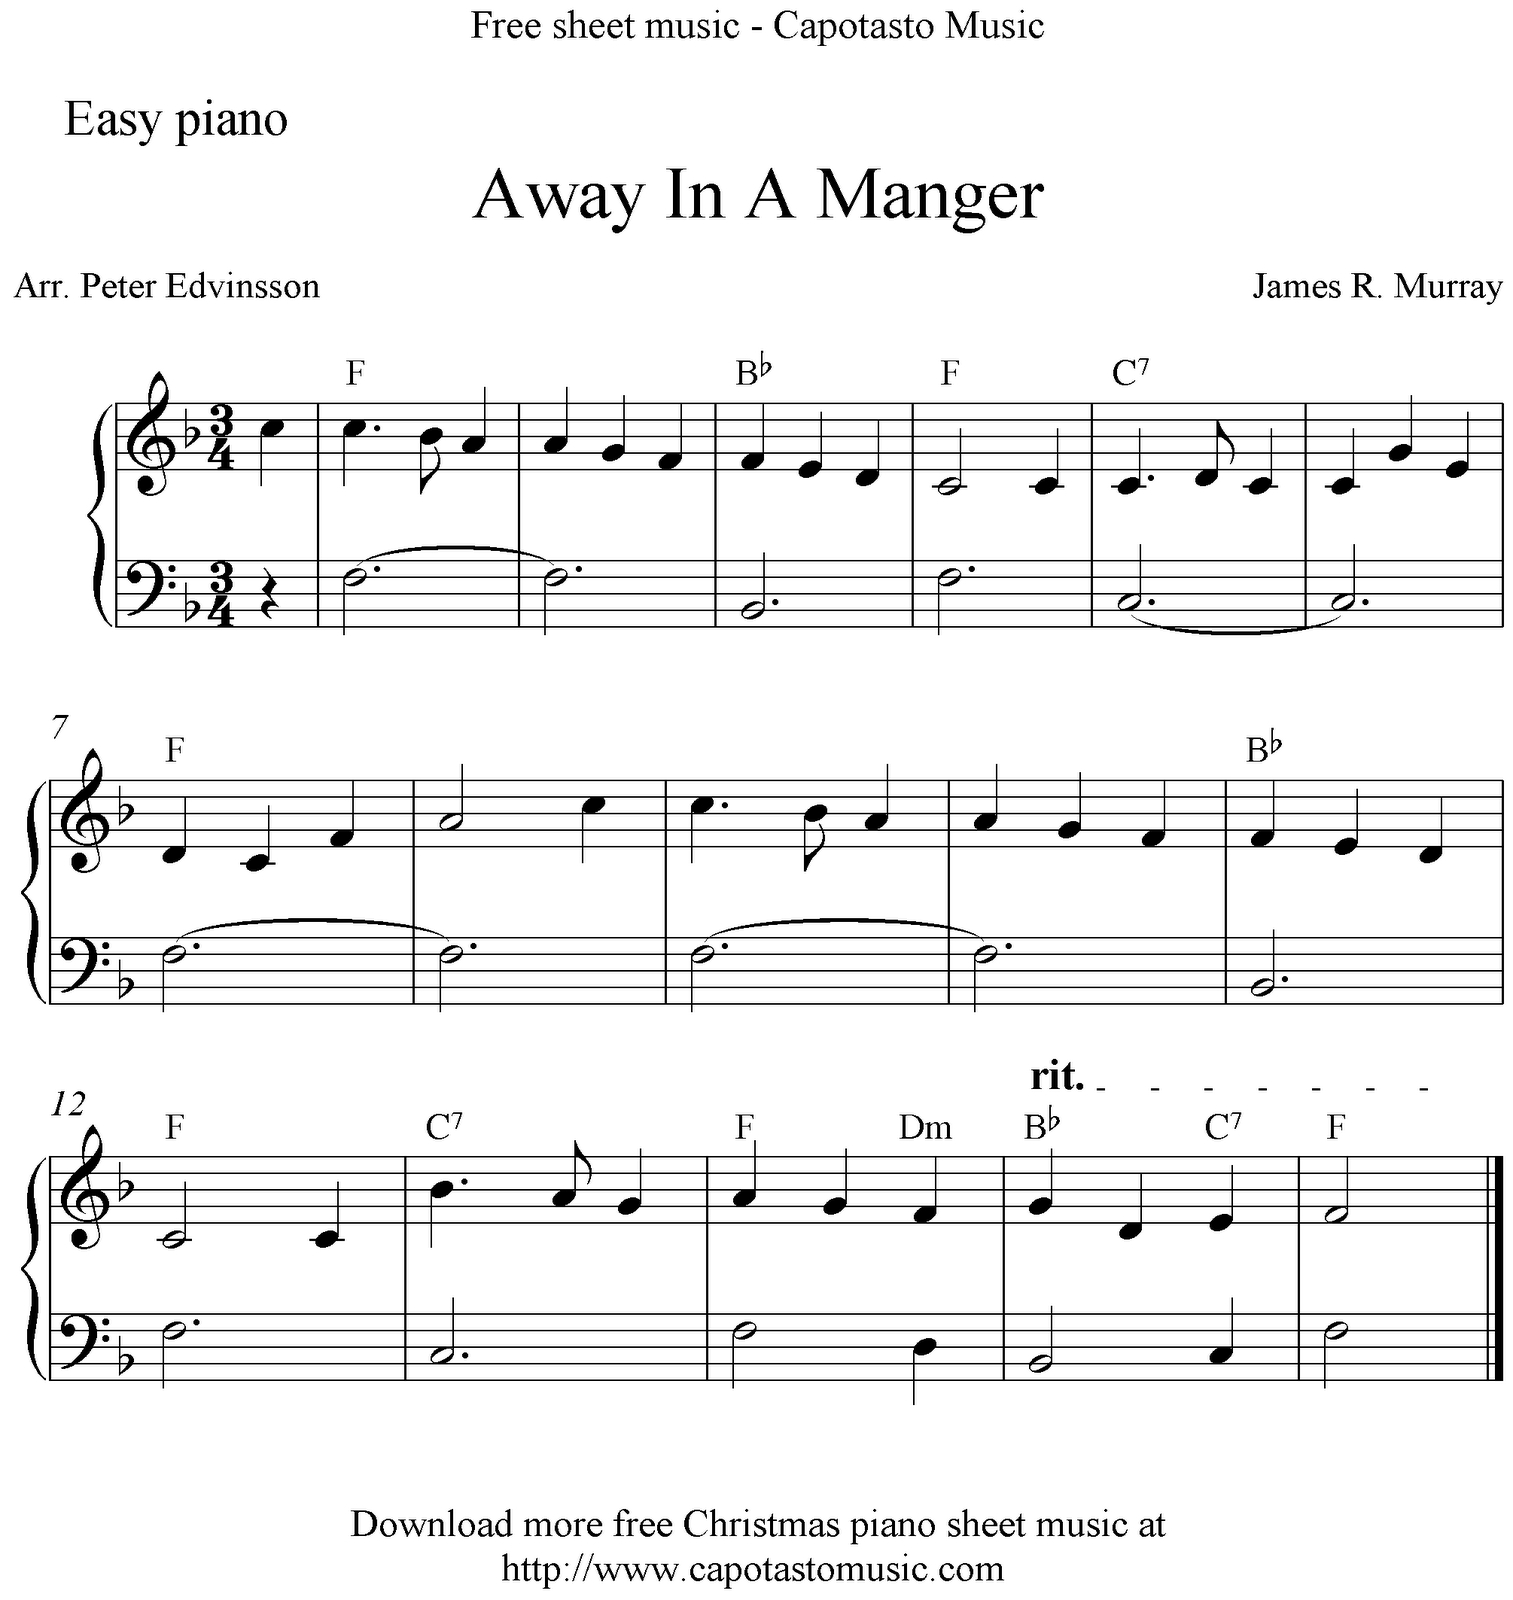 Free Printable Christmas Sheet Music For Piano | Free Printable